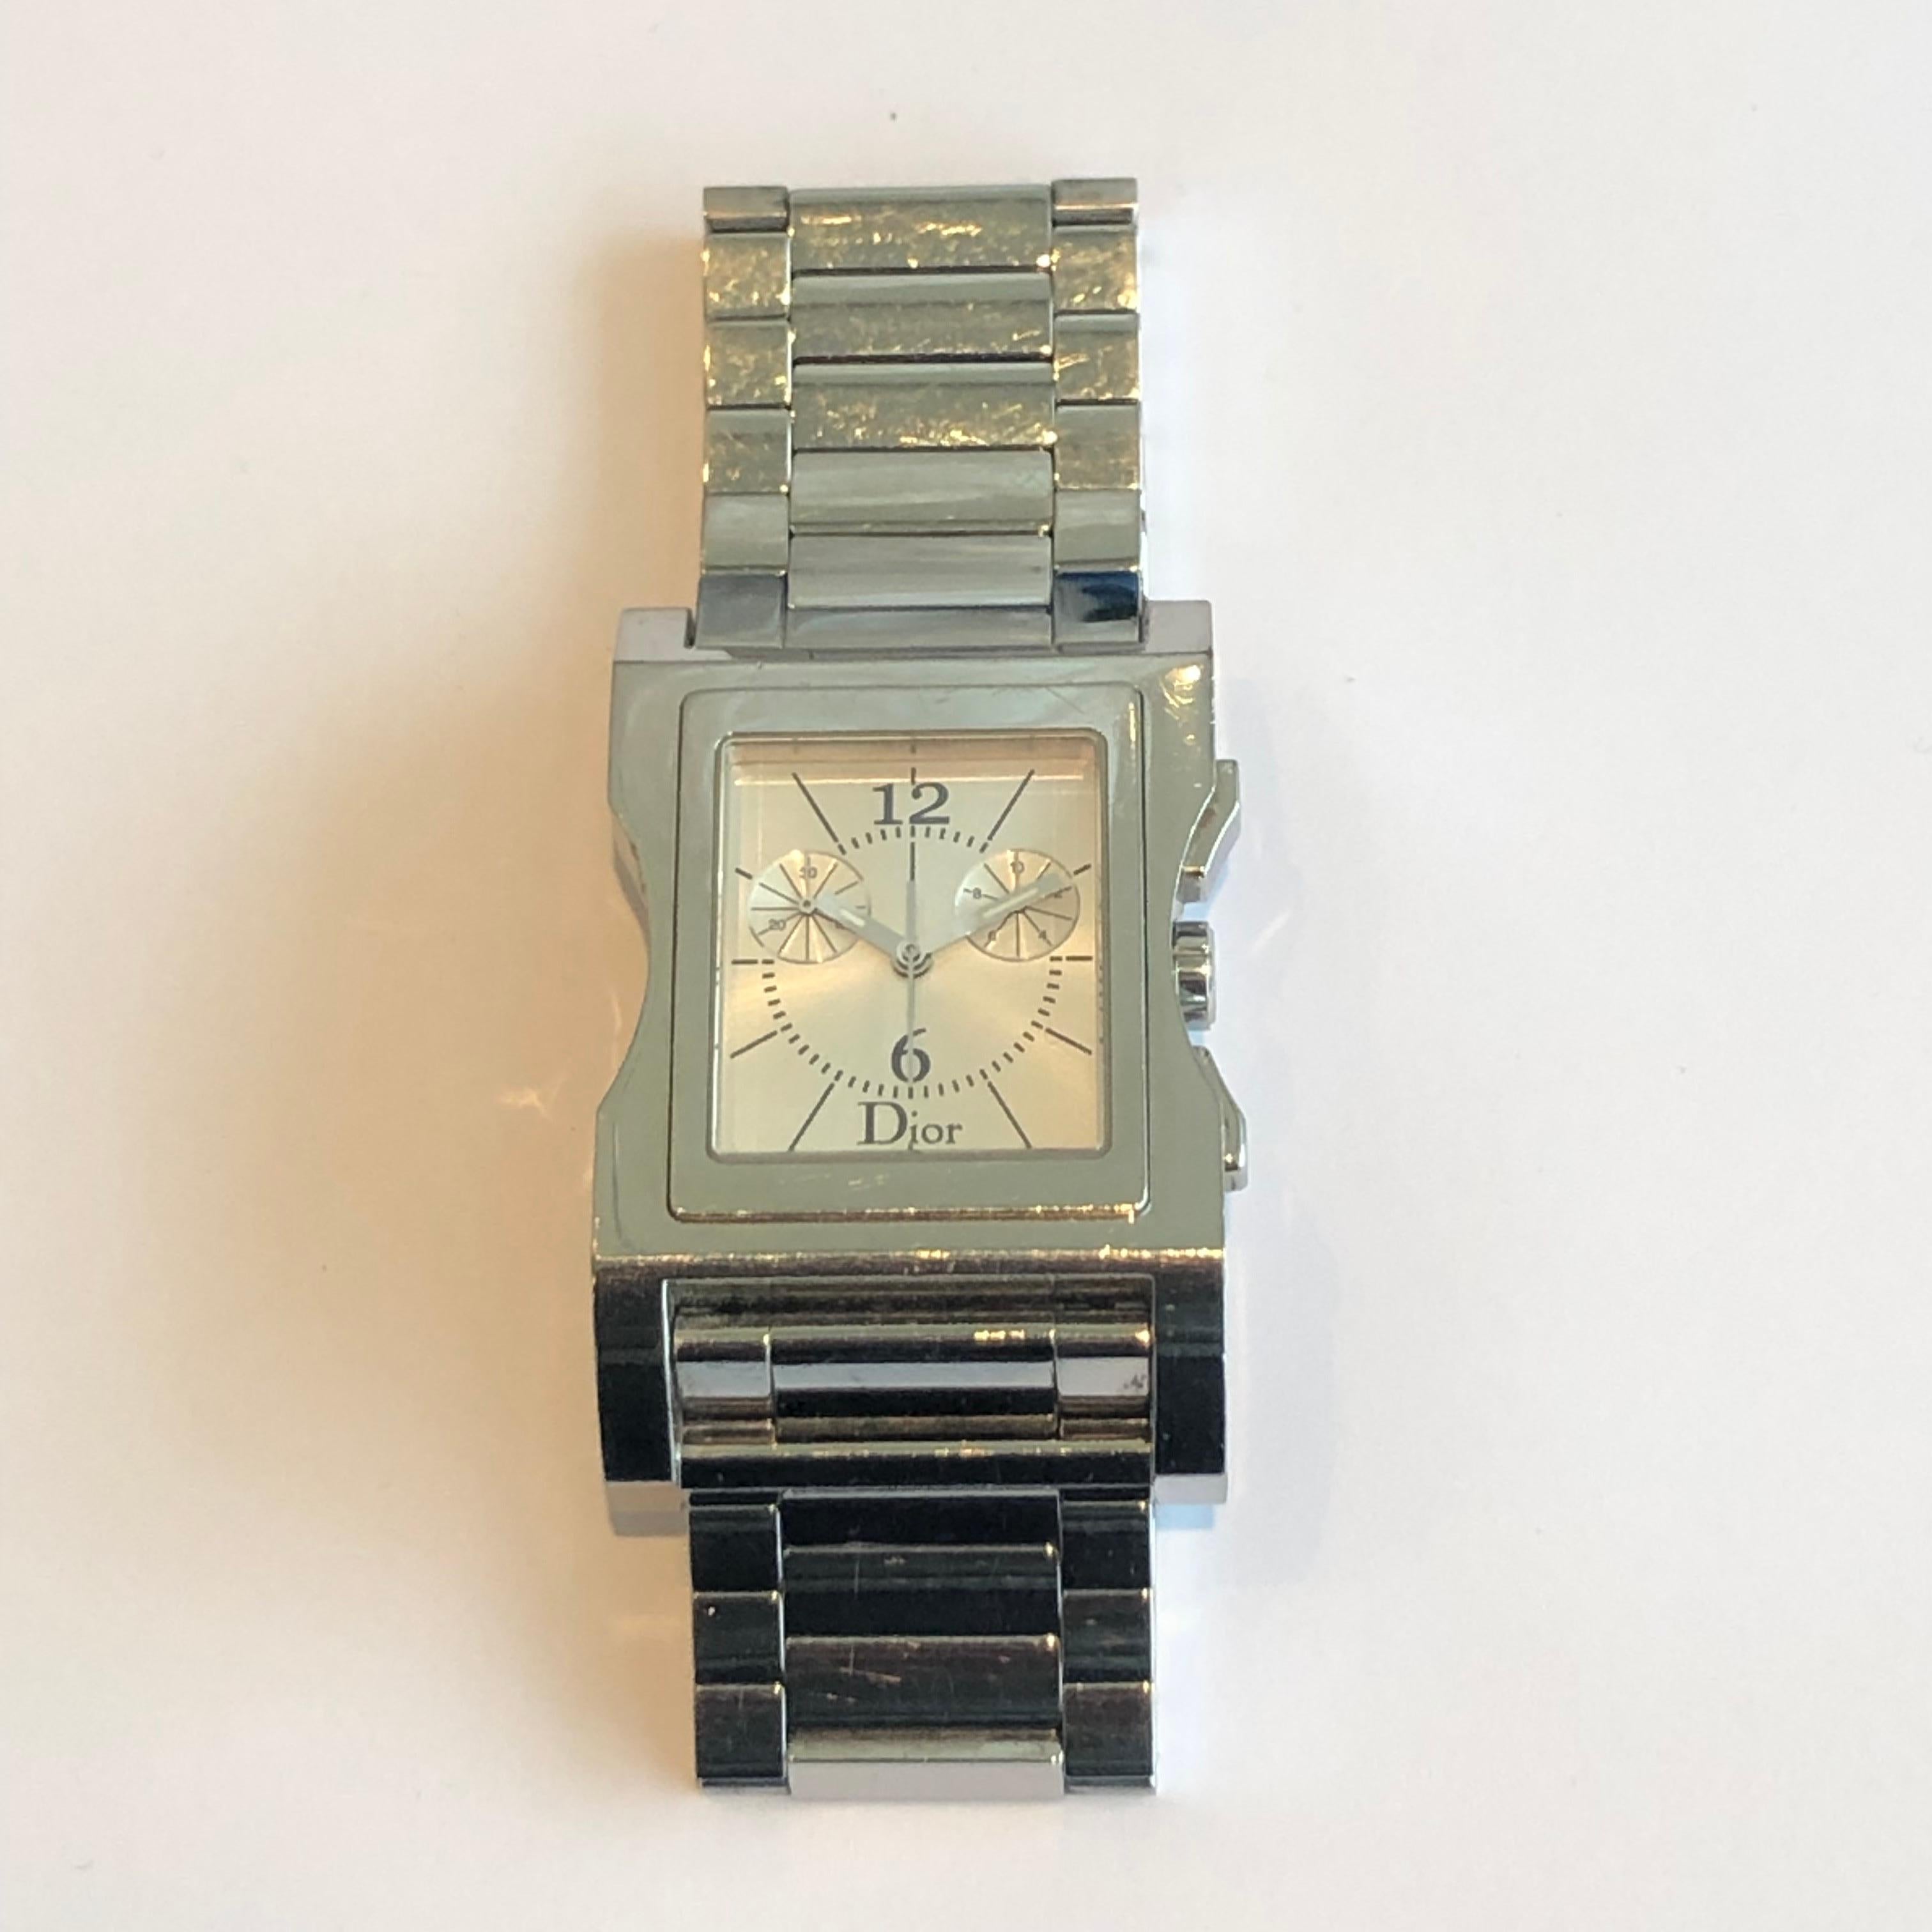 Uhr Chris 47 Chrono von Christian Dior aus Edelstahl (Gehäuse und Armband) 

Signiert und nummeriert.
Wasserfest.

Quarzwerk mit neuer Batterie. 
Uhr wurde gerade poliert, so dass es in perfektem Zustand ist. 

Das Gehäuse hat einen Durchmesser von